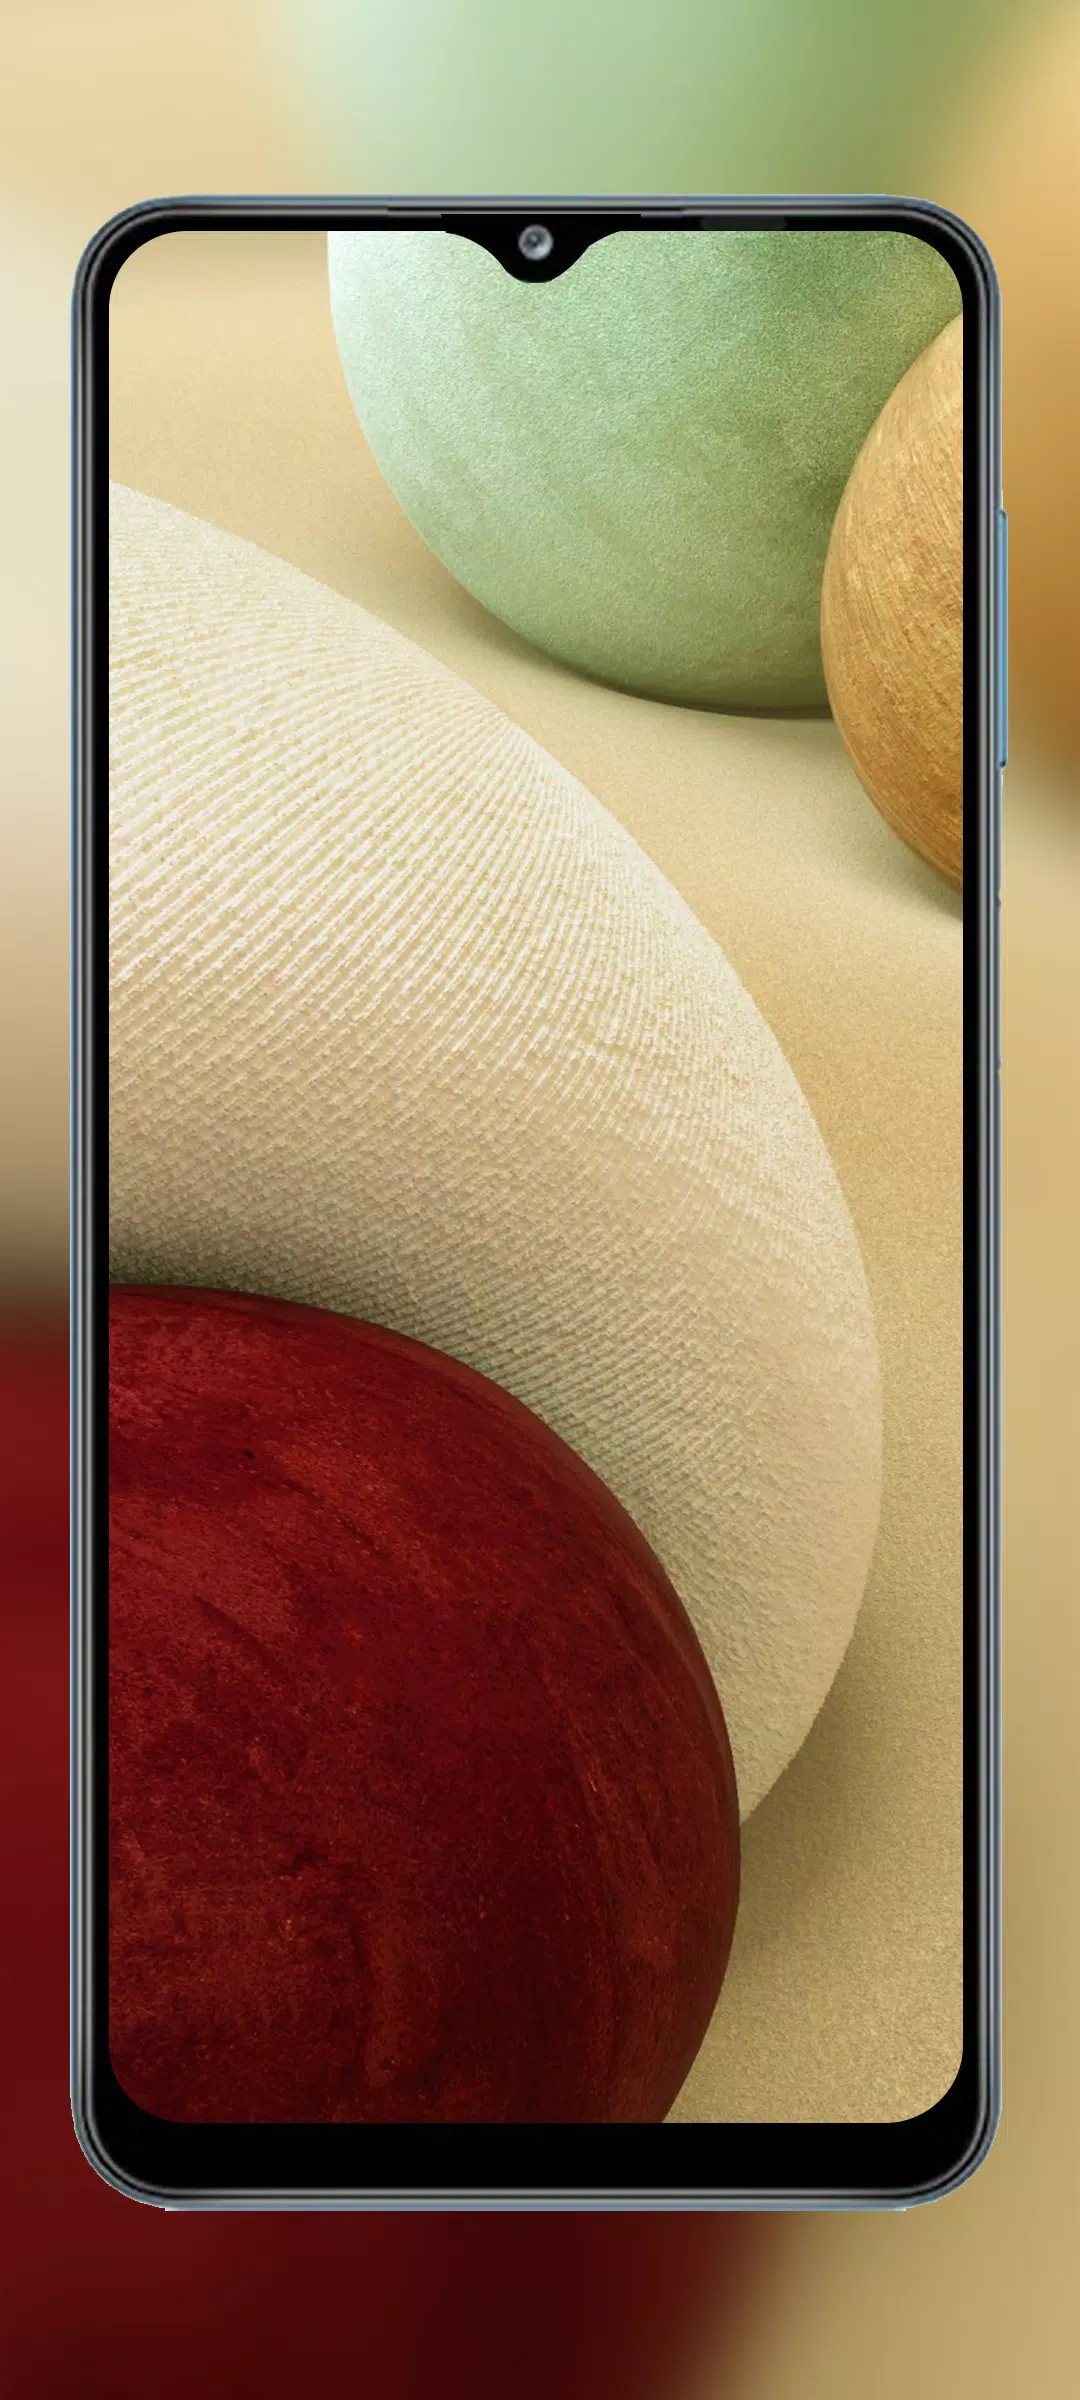 Galaxy A12 & A02 - Wallpaper APK: Tạo ma thuật cho màn hình di động của bạn với ứng dụng hình nền APK dành cho các dòng điện thoại Samsung Galaxy A12 và A